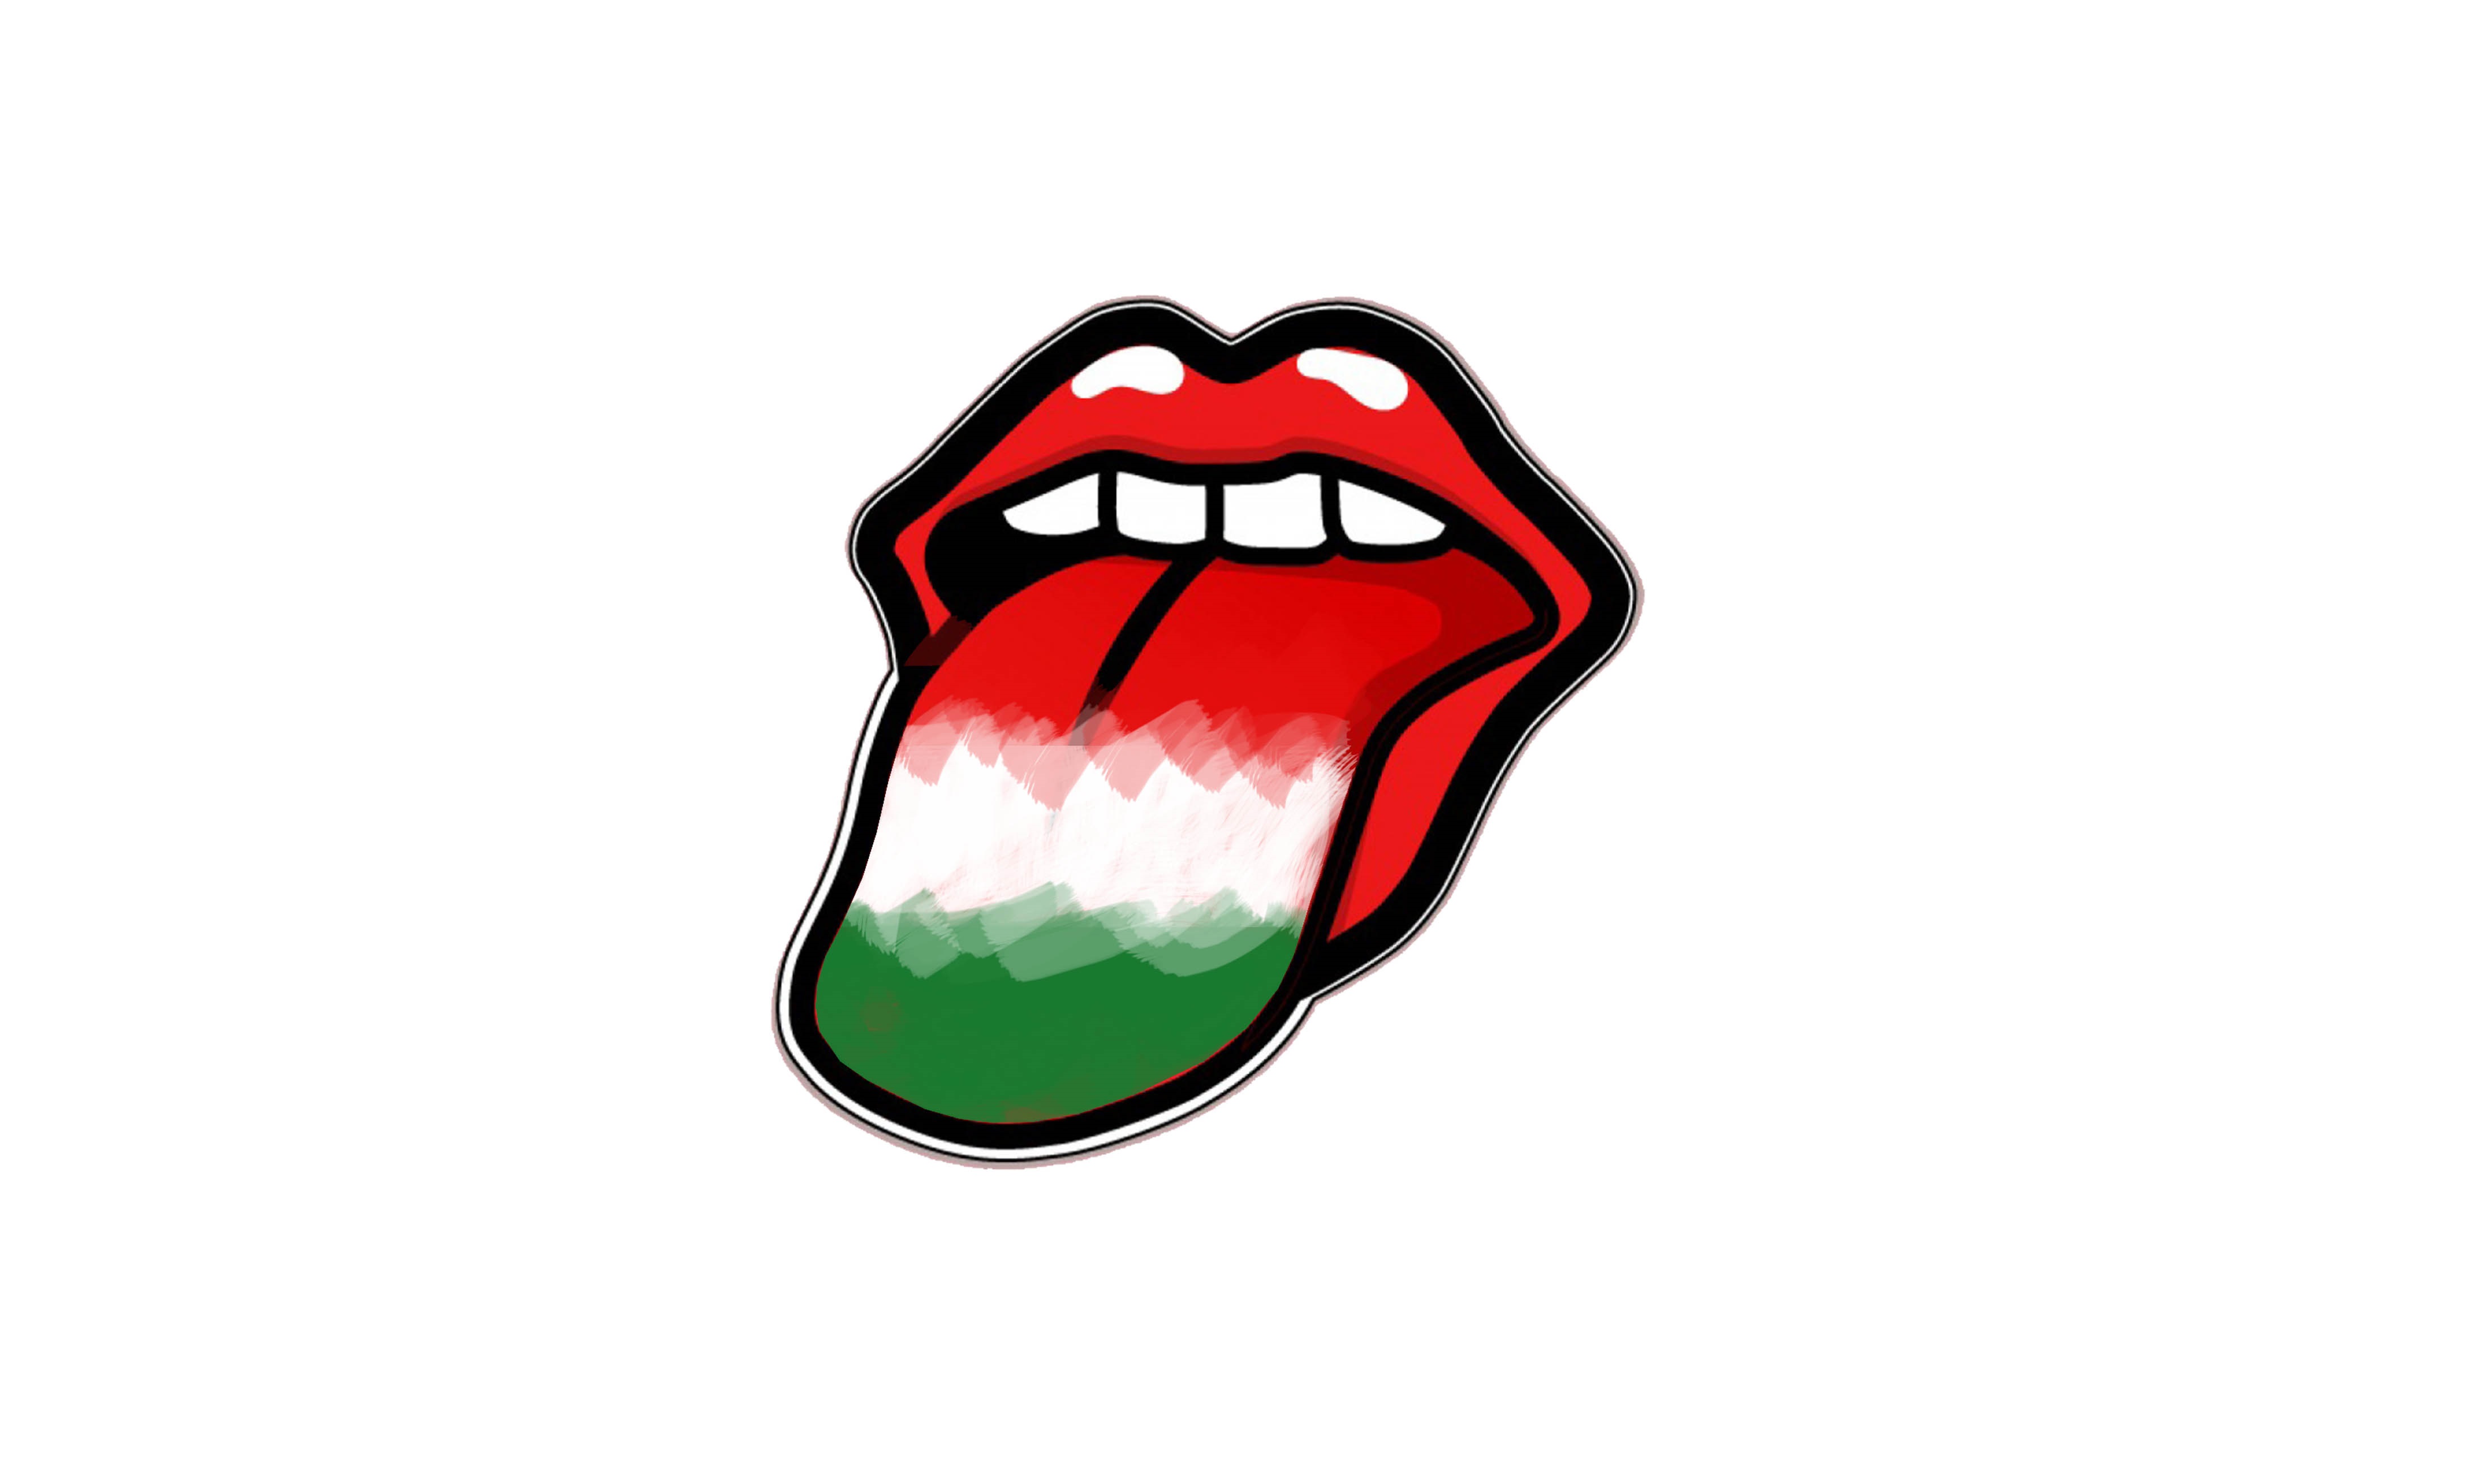 Sprache der ungarischen Flaggensprache